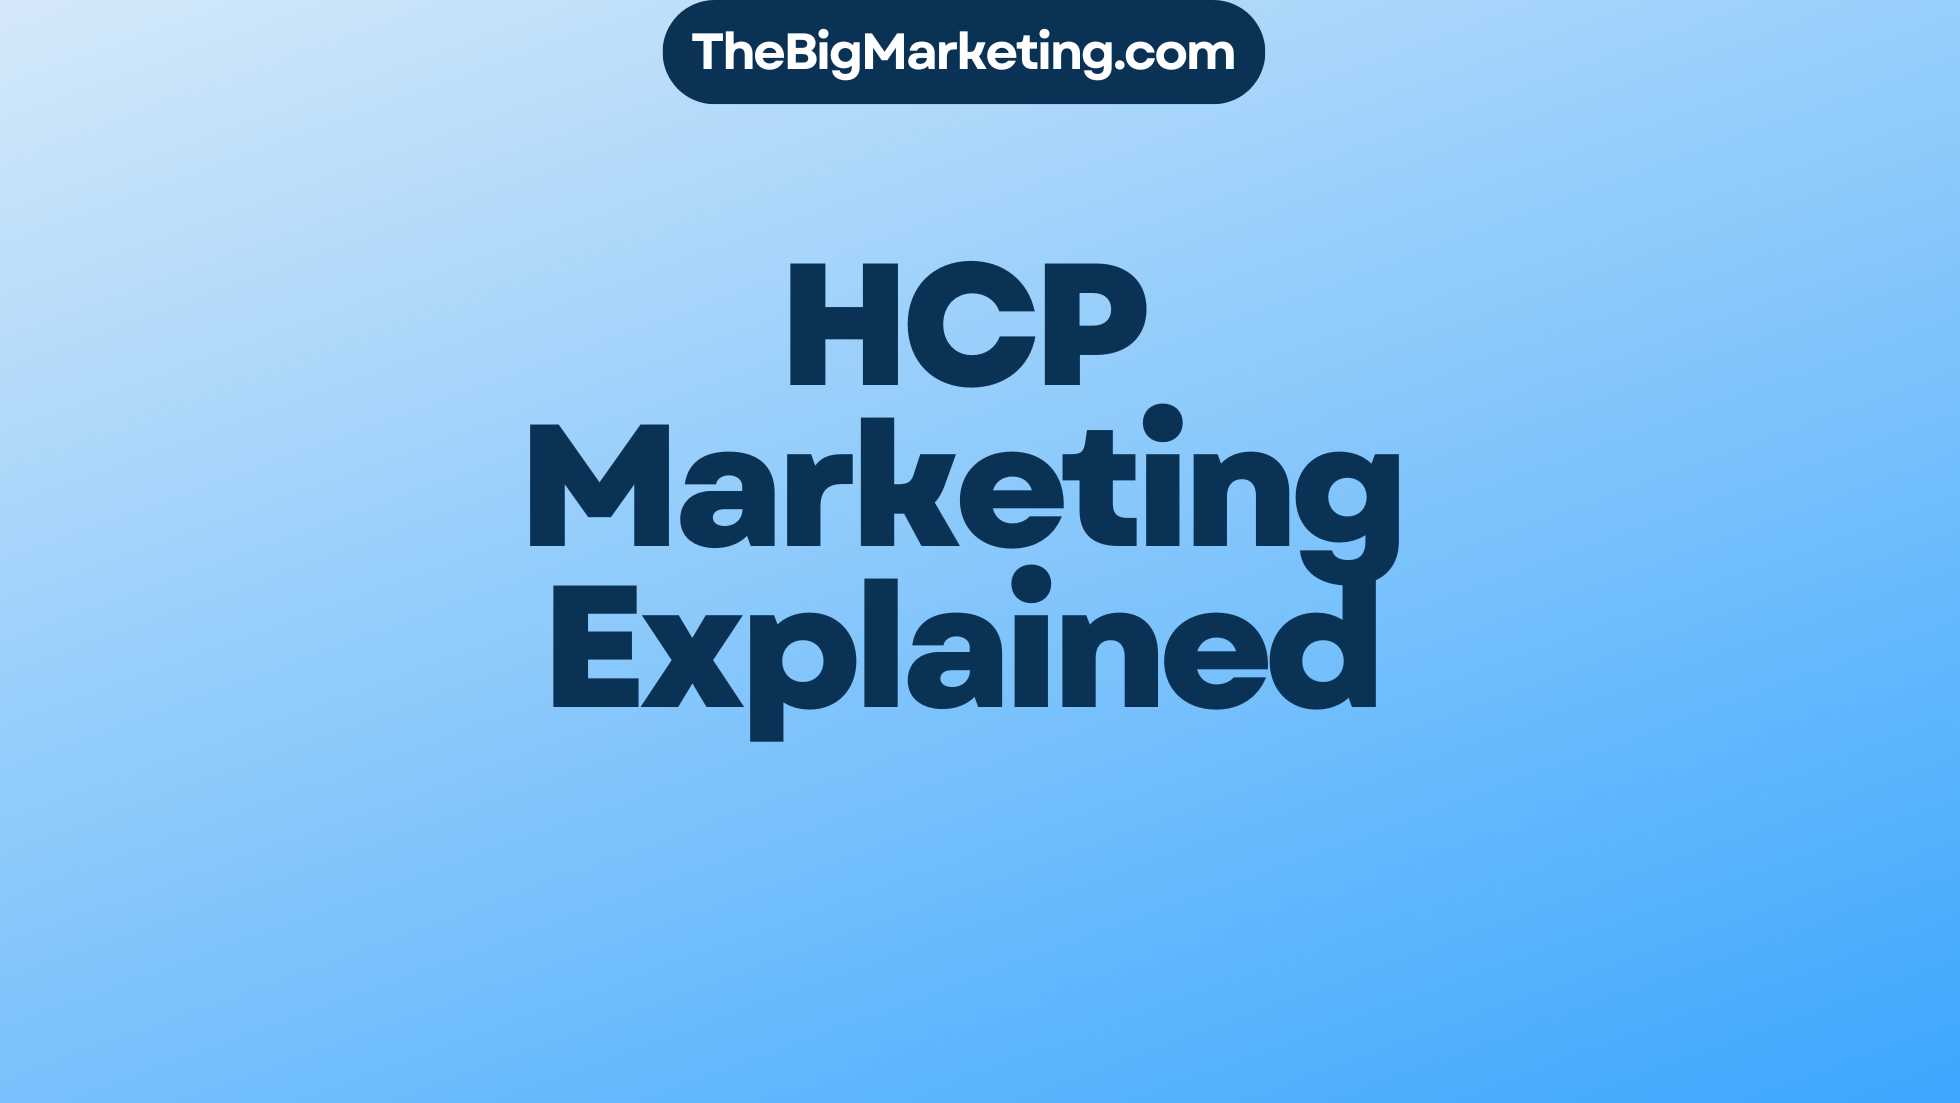 HCP Marketing Explained